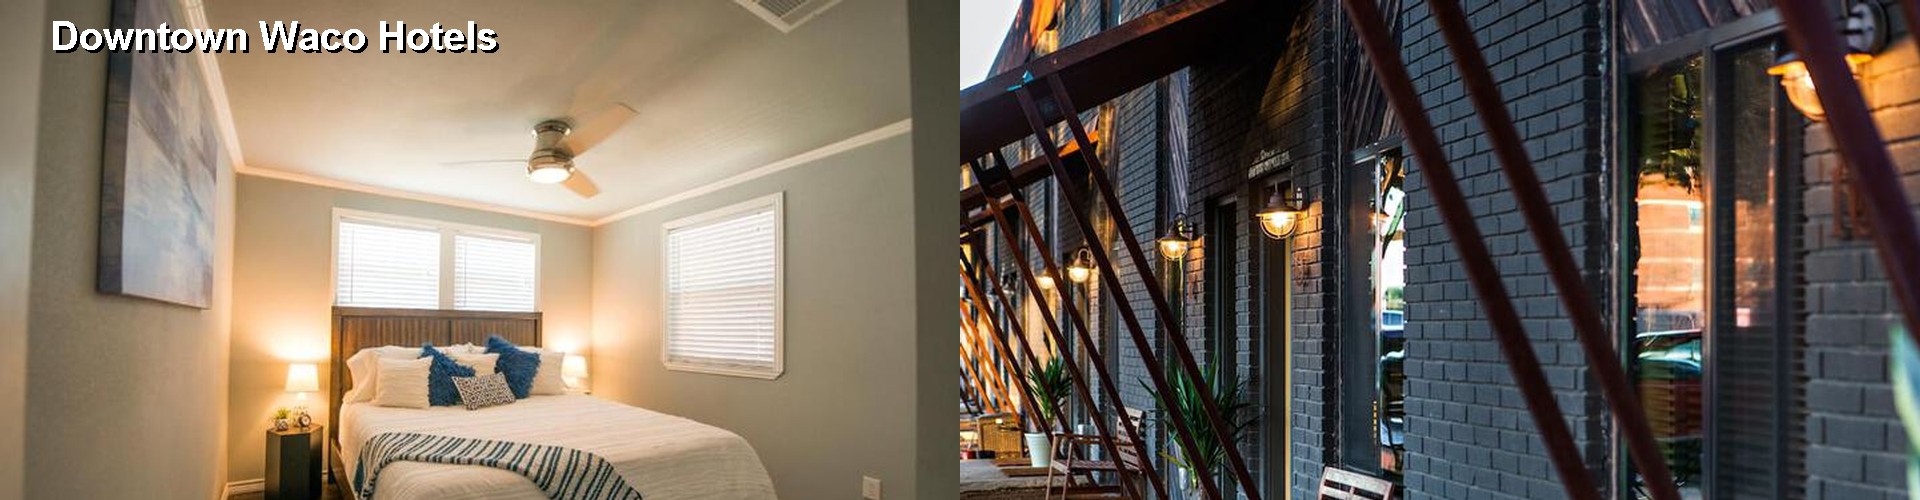 5 Best Hotels near Downtown Waco